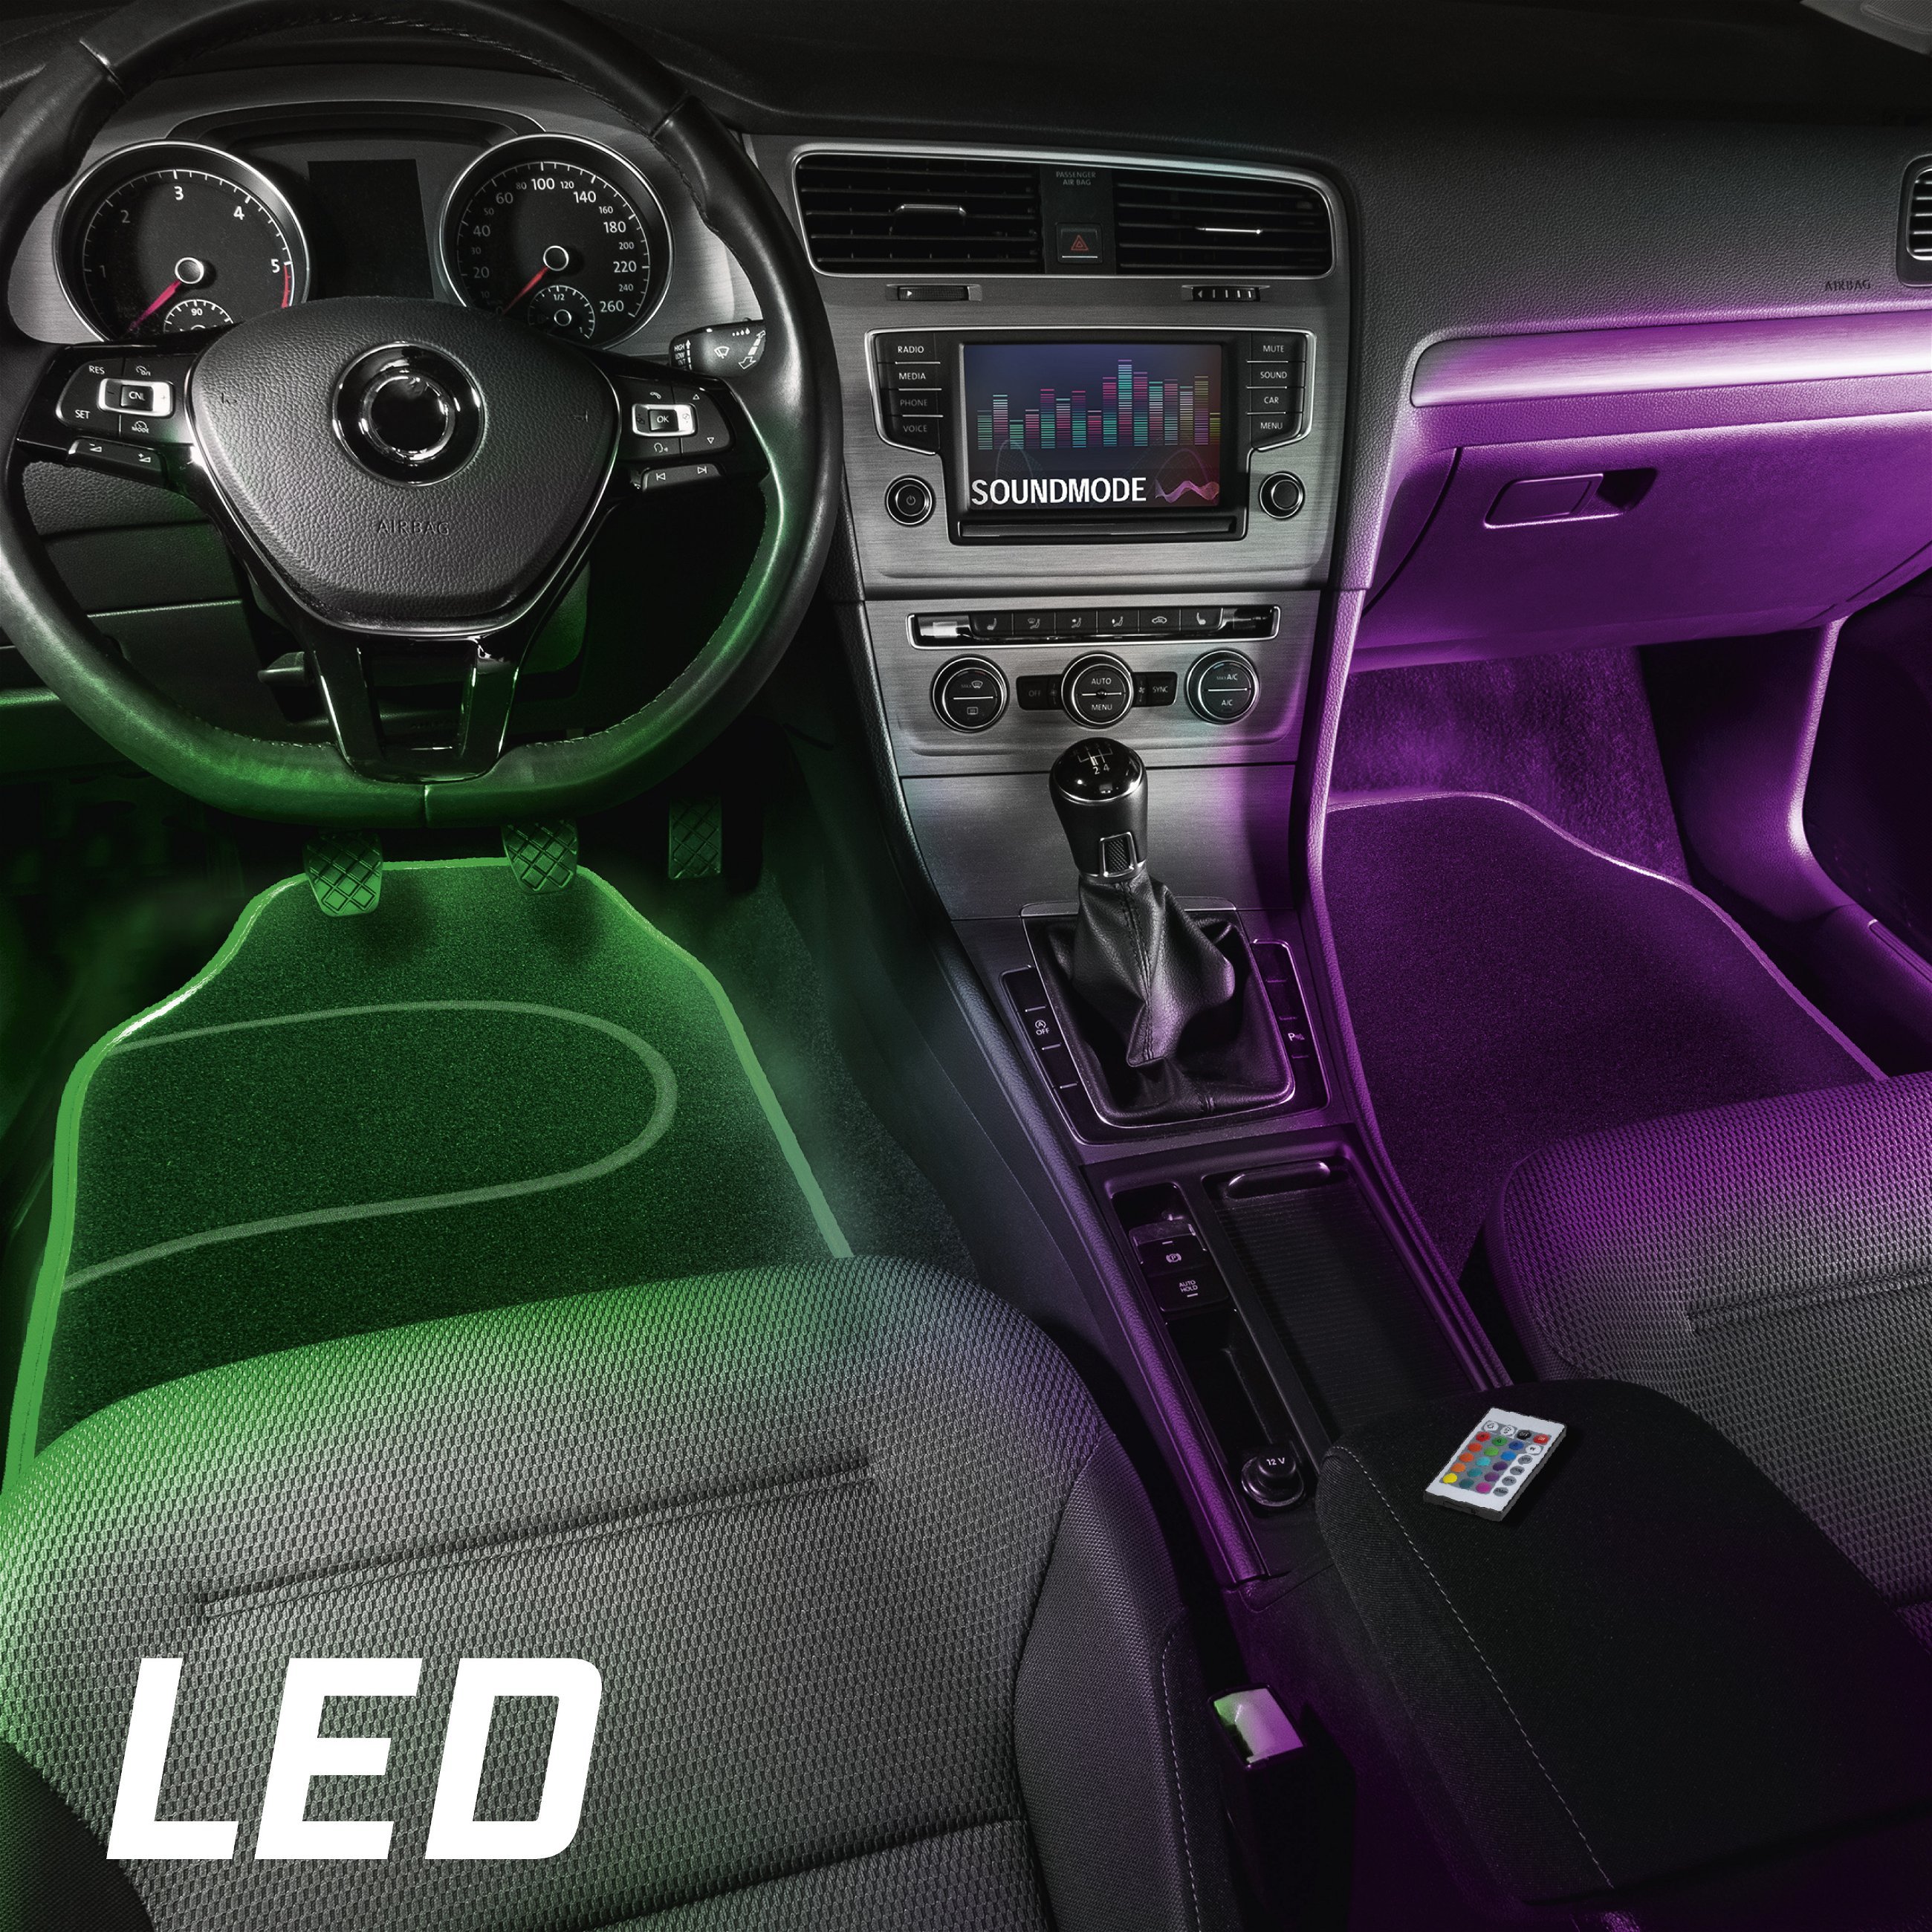 Tapis de voiture LED Ambiente avec sélection des couleurs, diverses fonctions d'éclairage et télécommande pour l'éclairage d'ambiance